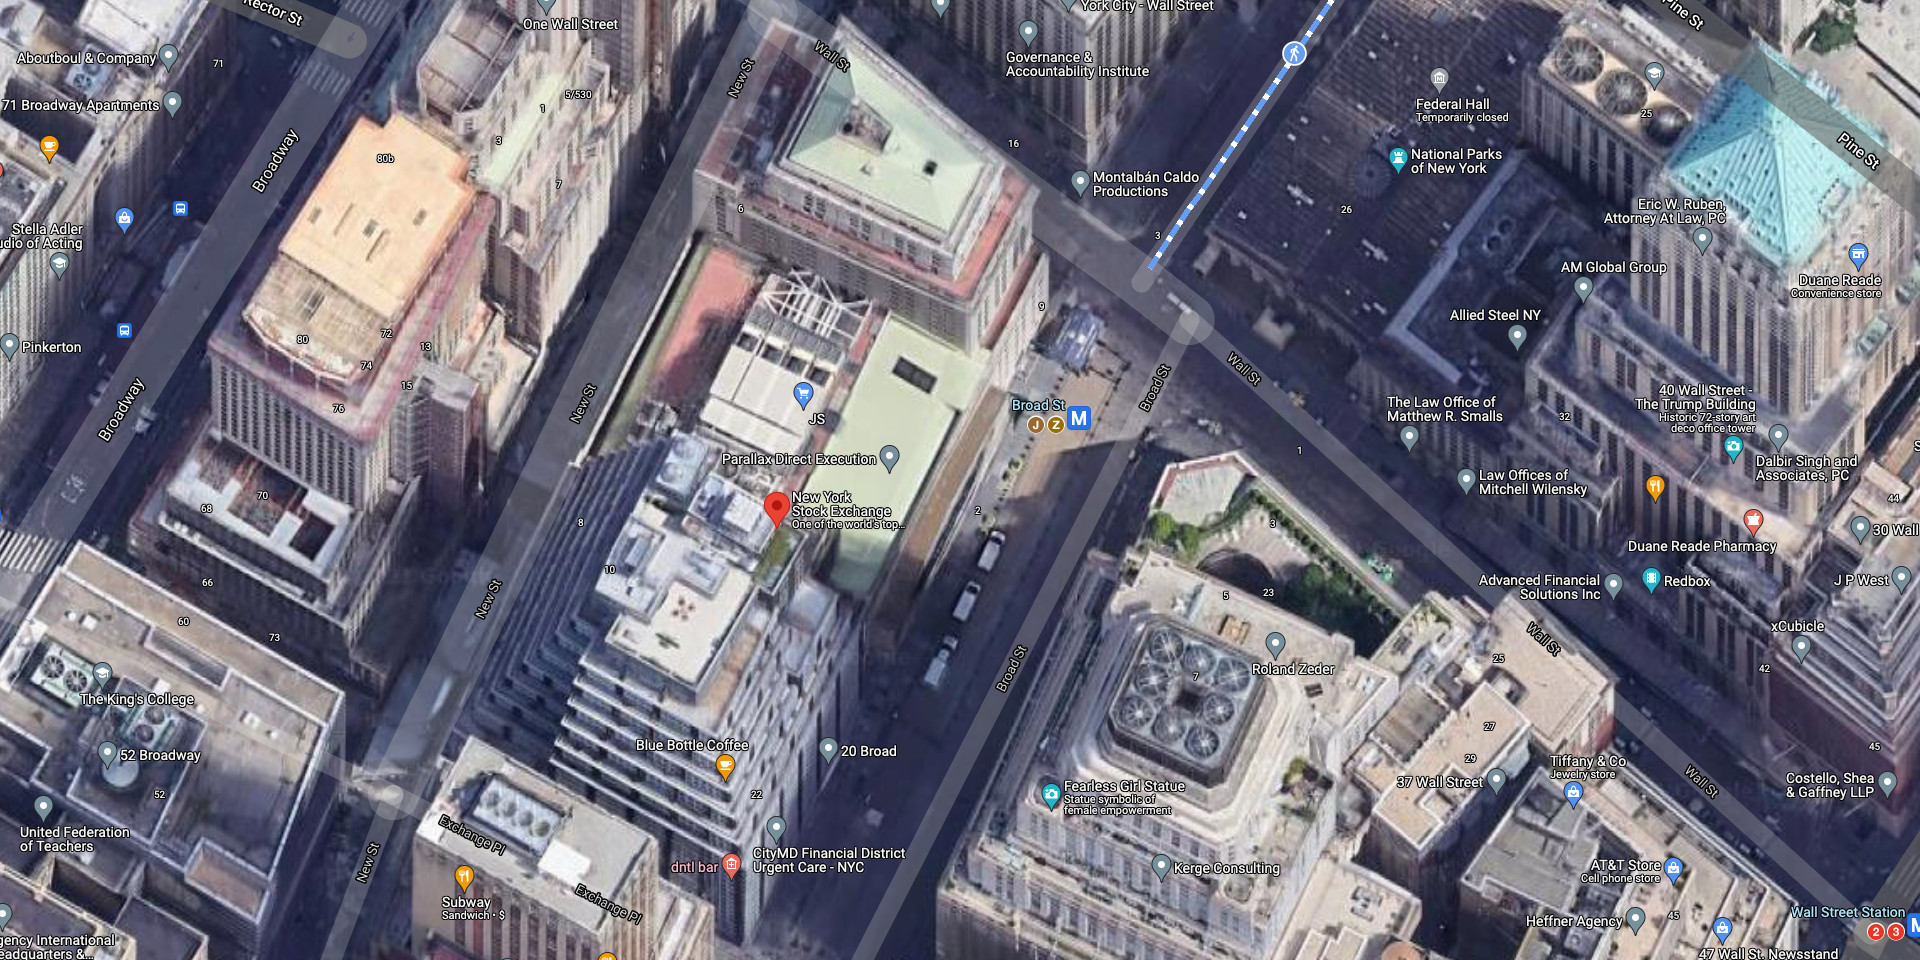 NYSE is 3 Buildings